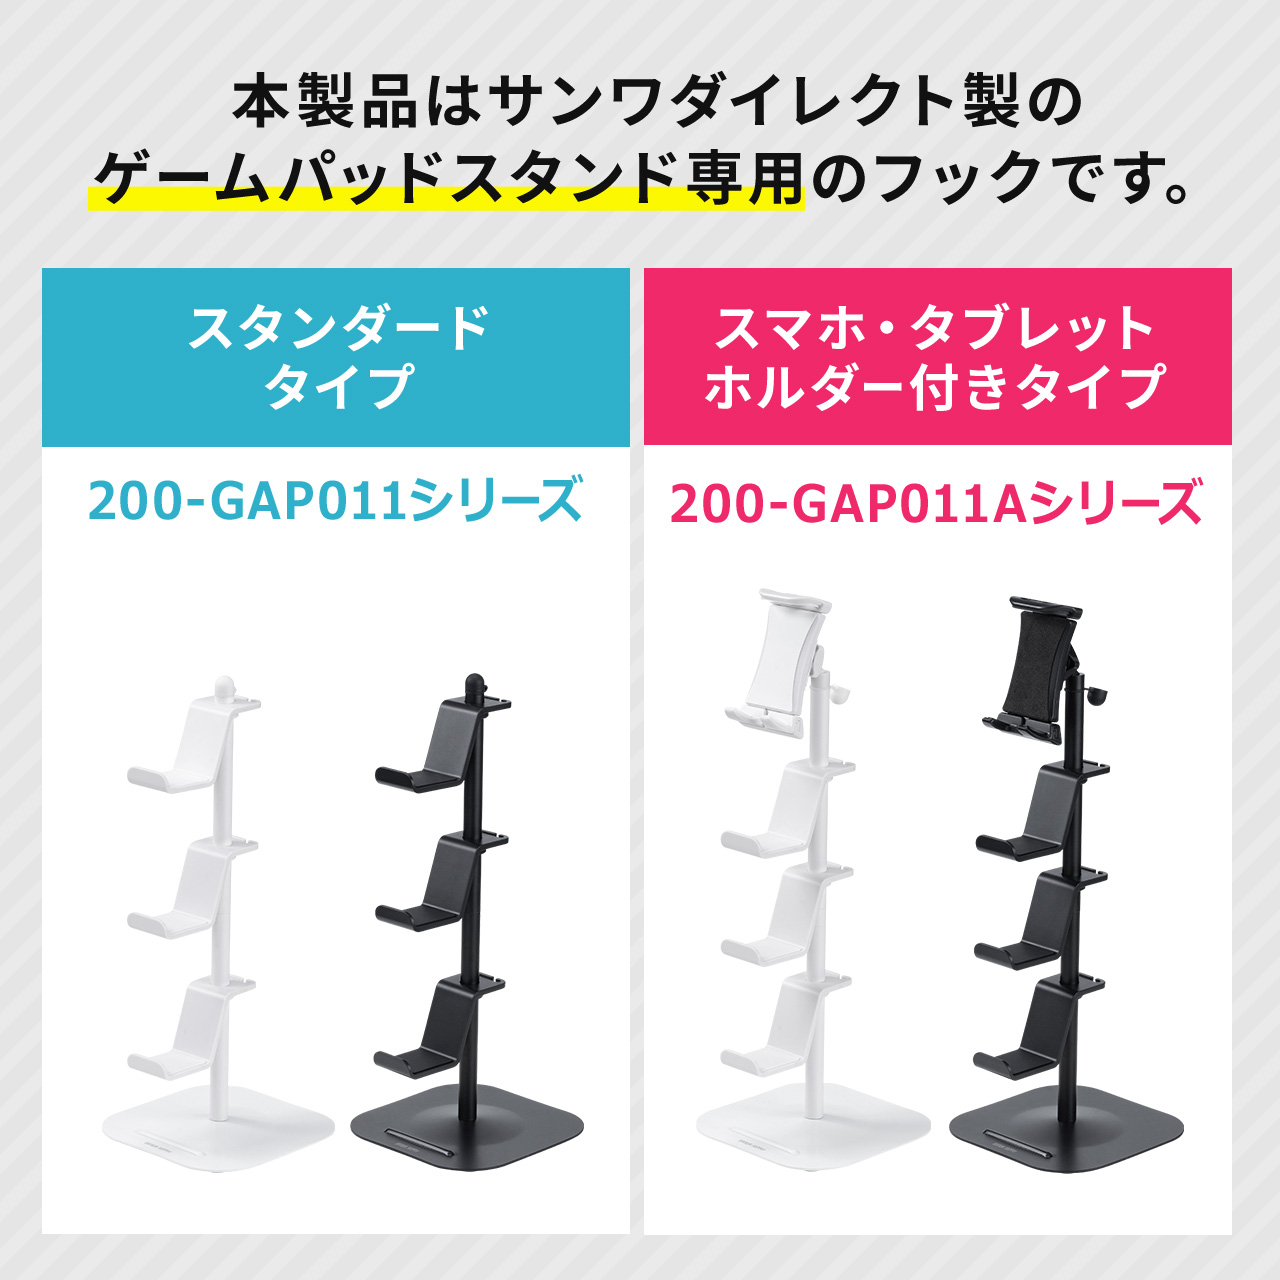 ゲームコントローラー用フック 200-GAP011BK 200-GAP011W 200-GAP011ABK 200-GAP011AW 1/4インチネジ取り付け ブラック 200-GAPFBK